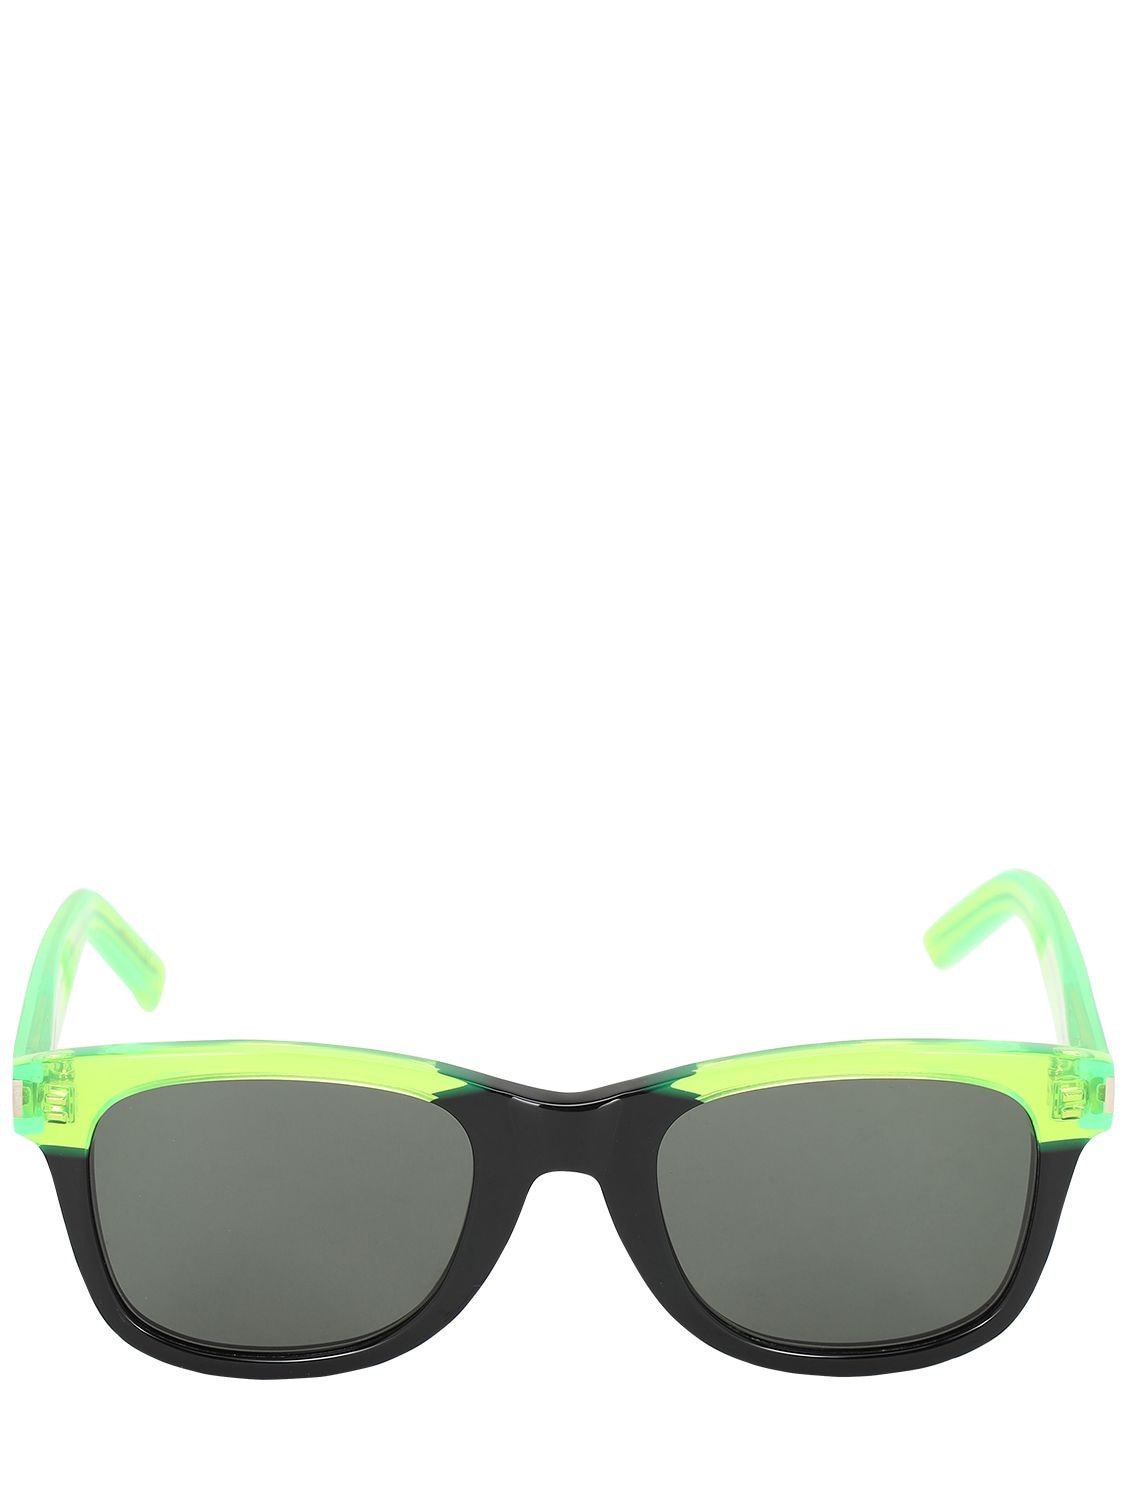 Saint Laurent Squared Neon Acetate Sunglasses In Green